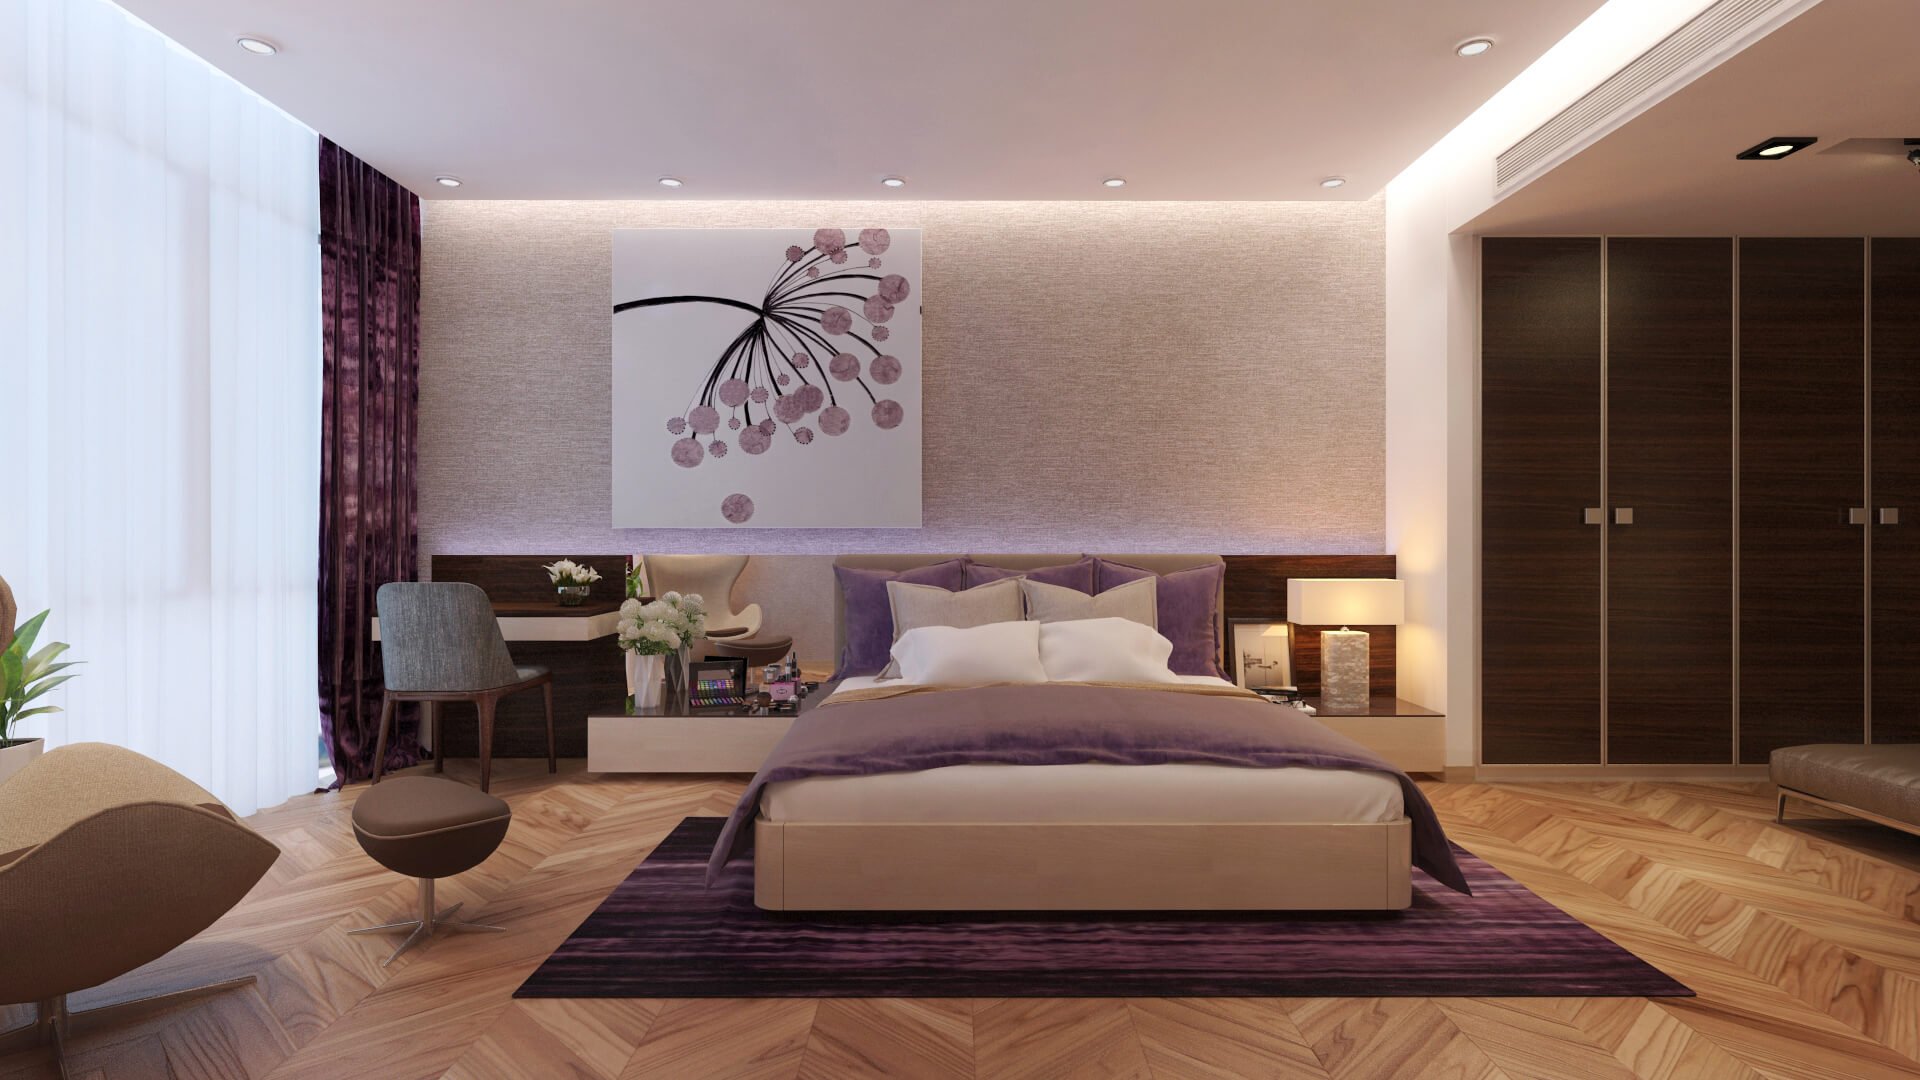 Hình 5. Thiết kế nội thất phòng ngủ tạo cảm giác lãng mạn và ấm cúng